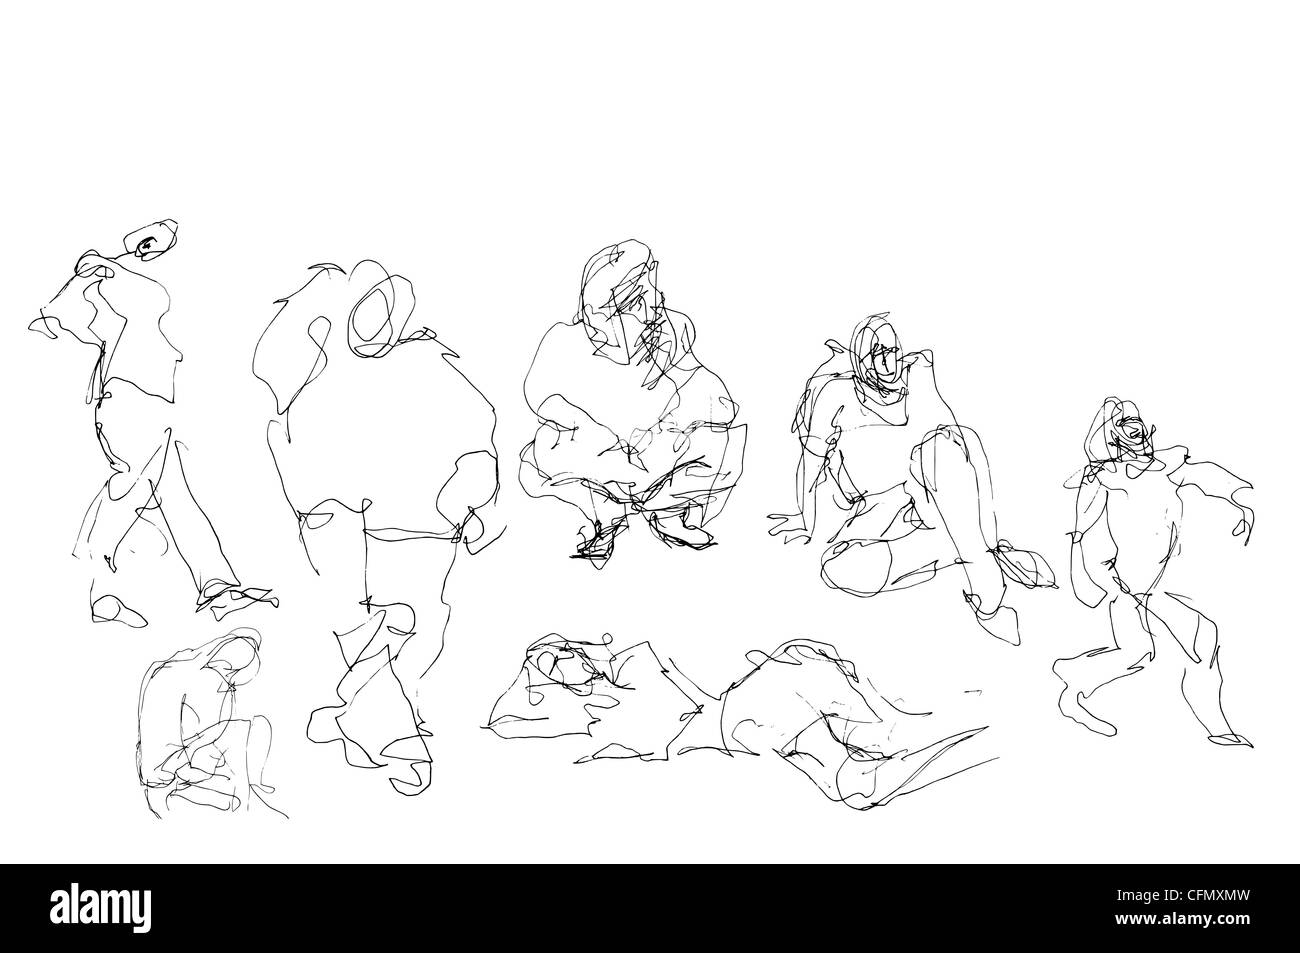 Une série de 17 croquis/gribouillis dessinés à la main informels, à utiliser comme illustrations de divers sujets. Drôle hilarante bizarre ridicule ou mortel grave. Banque D'Images